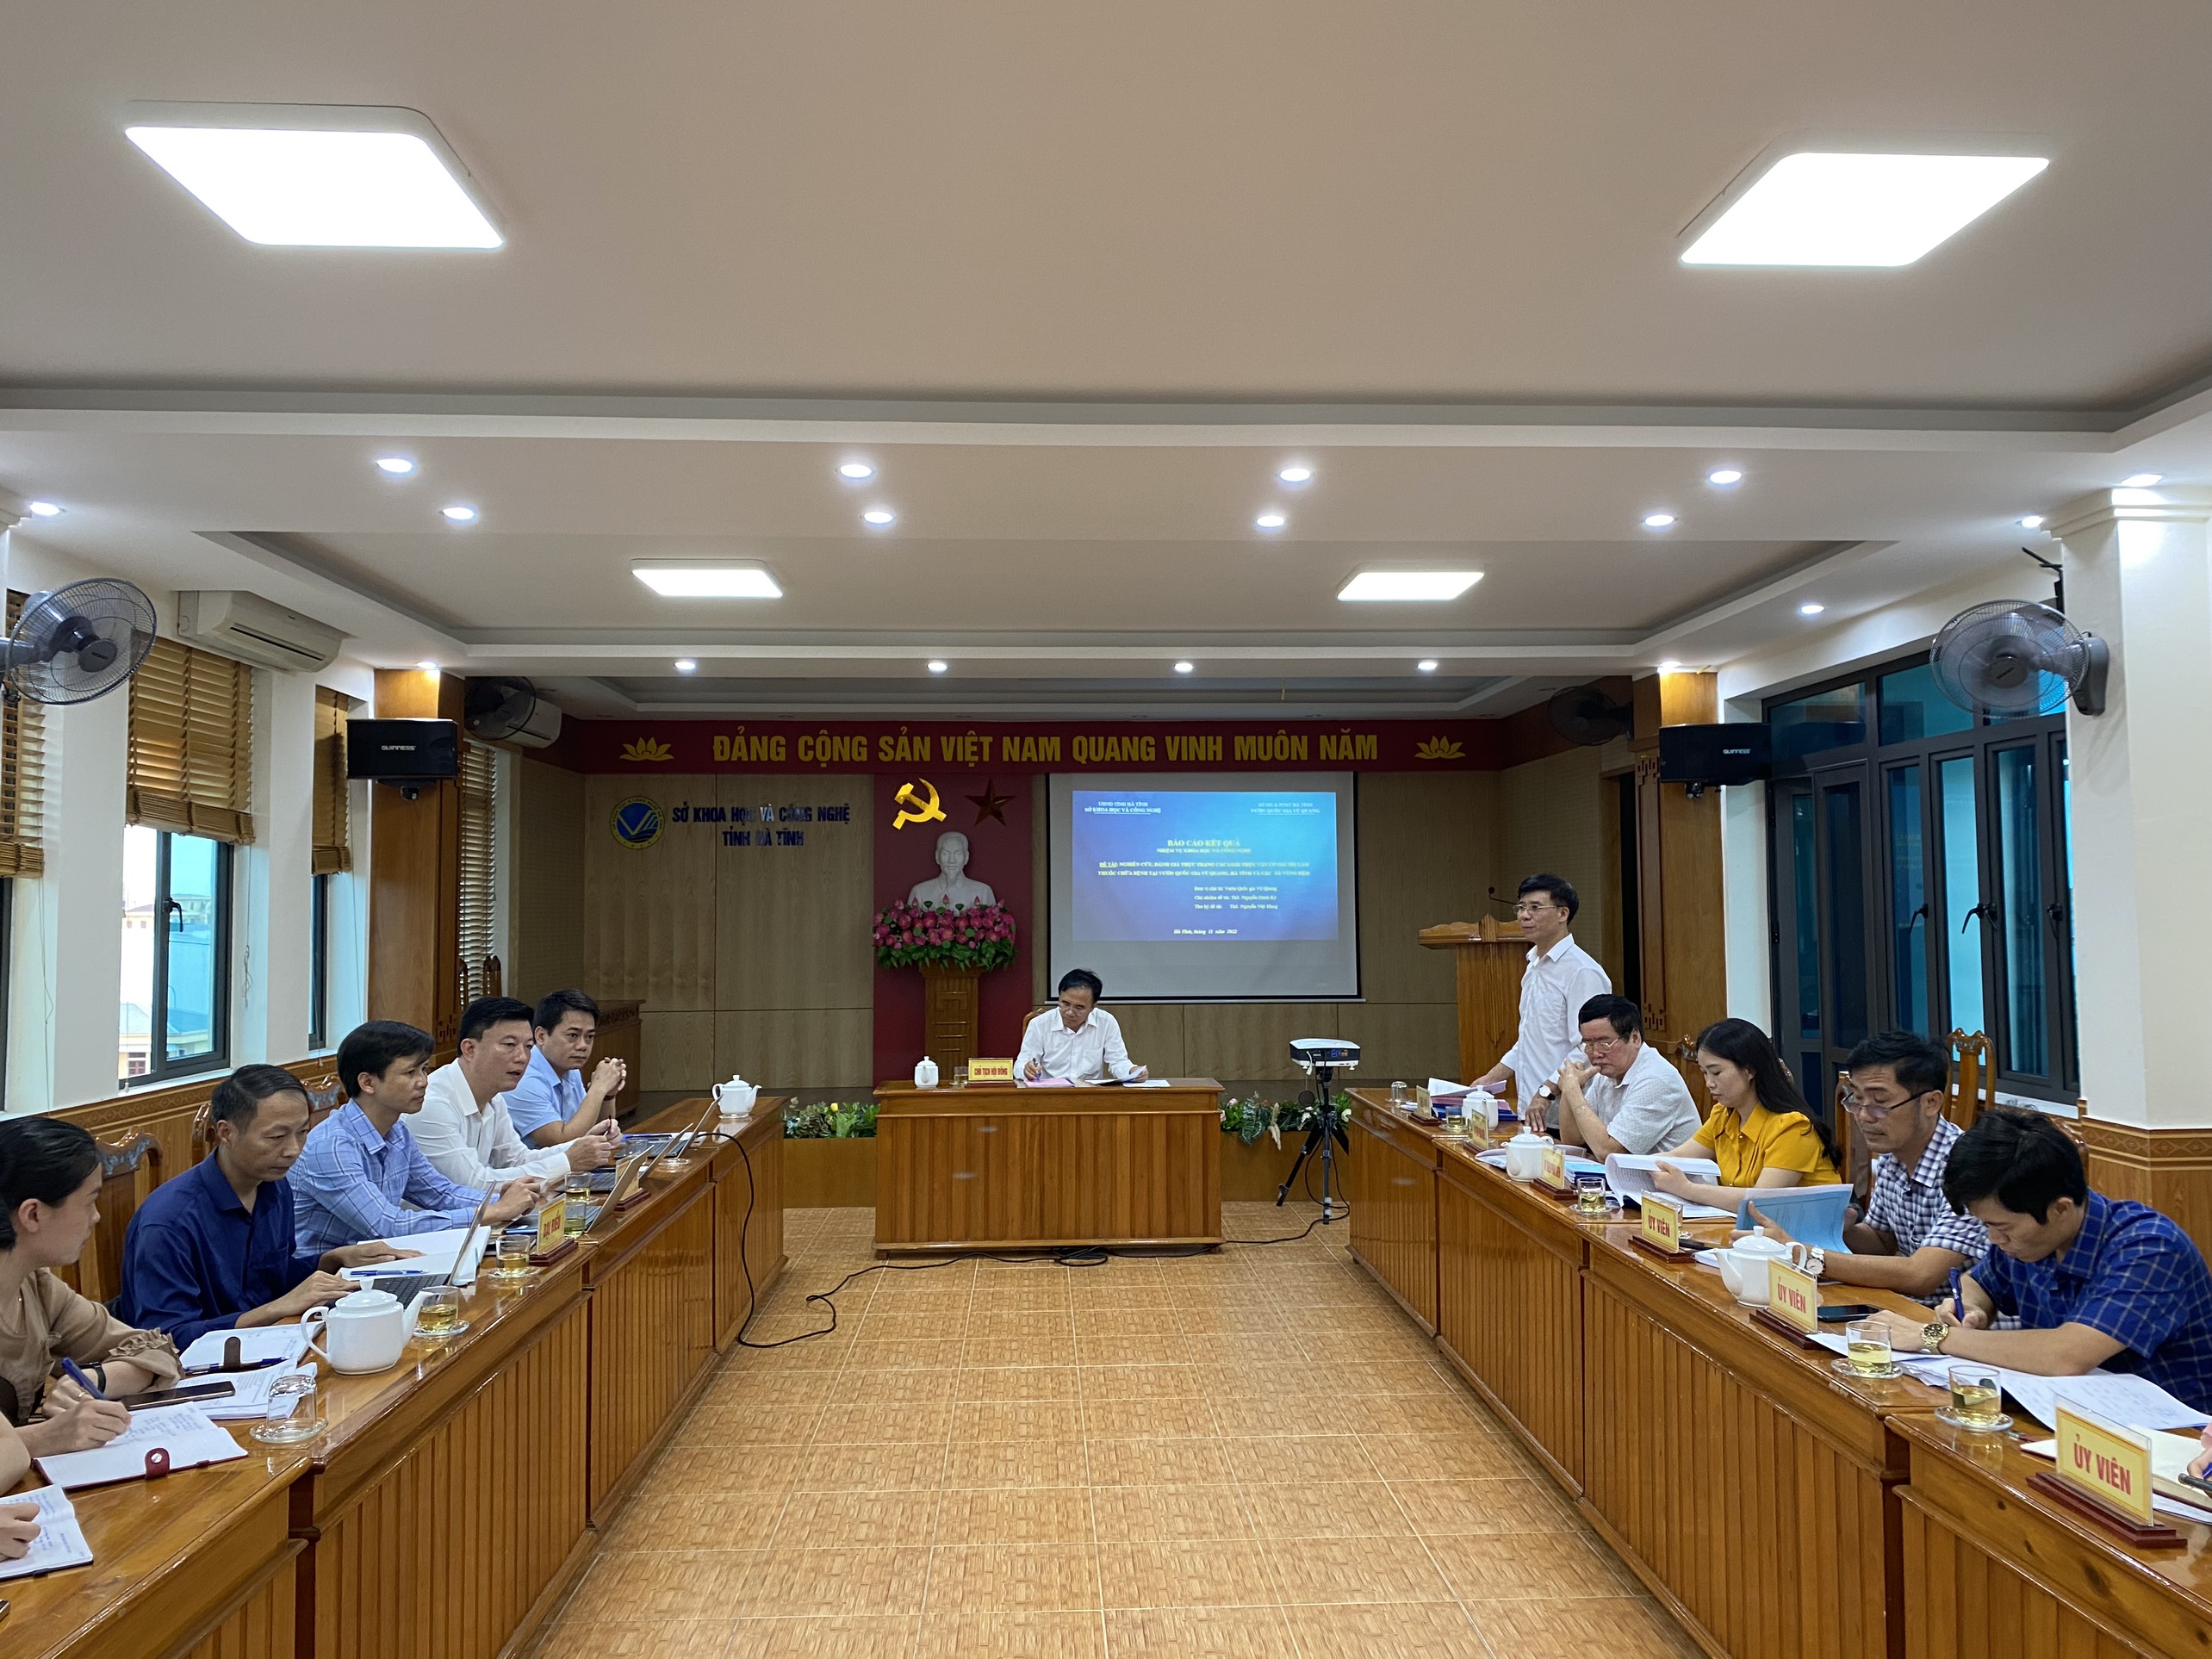 Đề tài Khoa học công nghệ của Vườn Quốc gia Vũ Quang được Hội đồng khoa học đề xuất đạt loại xuất sắc